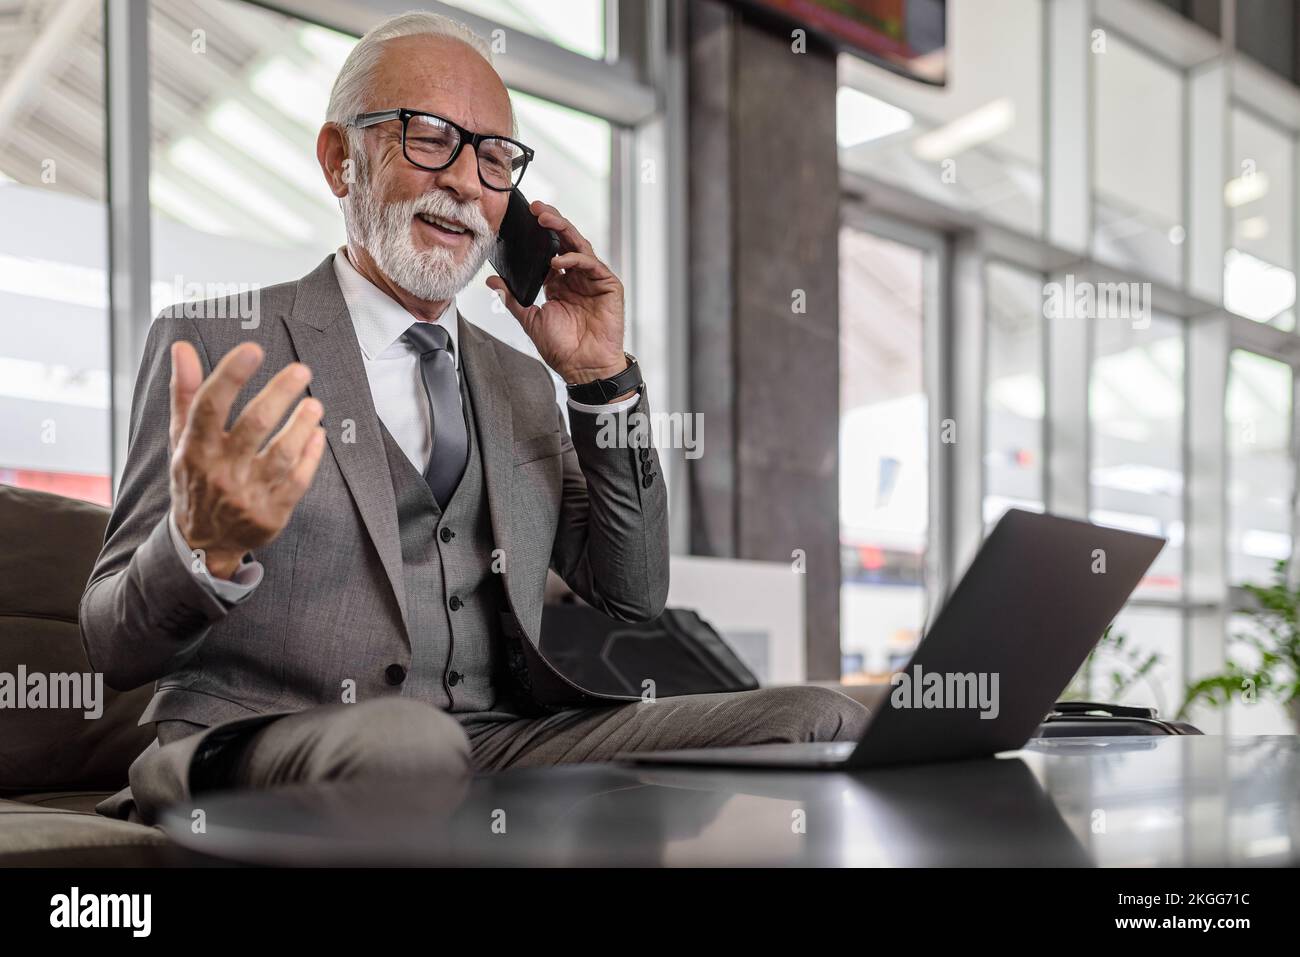 Un professionnel de la personne âgée qui parle avec succès sur un téléphone portable. Un homme d'affaires travaille sur un ordinateur portable tout en étant assis à la table. Il porte une combinaison complète Banque D'Images